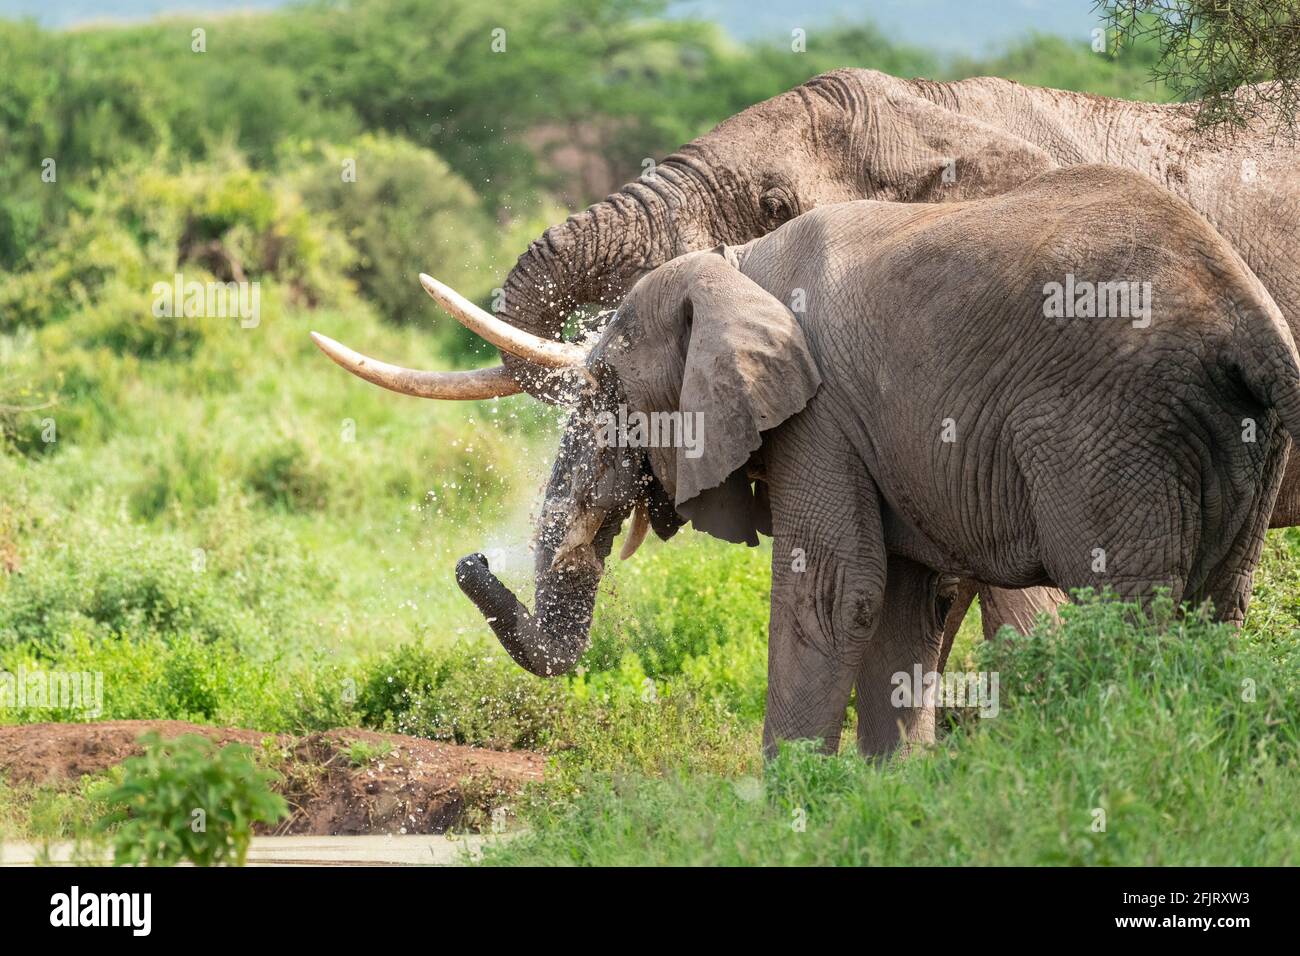 Los elefantes africanos (Loxodonta) beben agua y se bañan en un pequeño estanque en el parque nacional amboseli, Kenia, en un día soleado y con luz natural Foto de stock